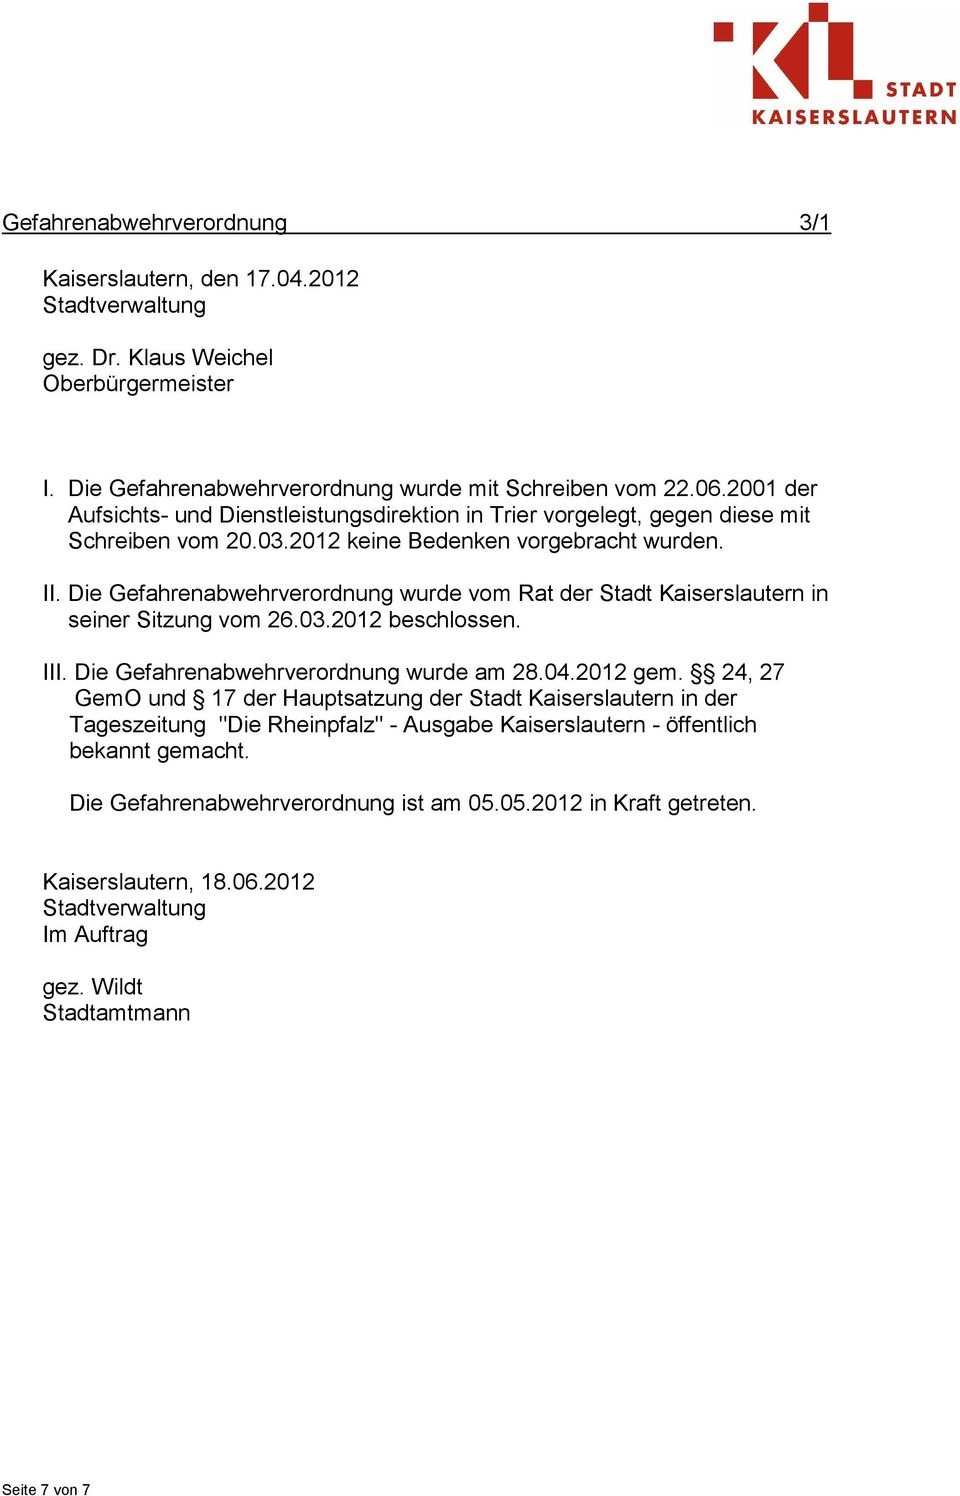 Die Gefahrenabwehrverordnung wurde vom Rat der Stadt Kaiserslautern in seiner Sitzung vom 26.03.2012 beschlossen. III. Die Gefahrenabwehrverordnung wurde am 28.04.2012 gem.